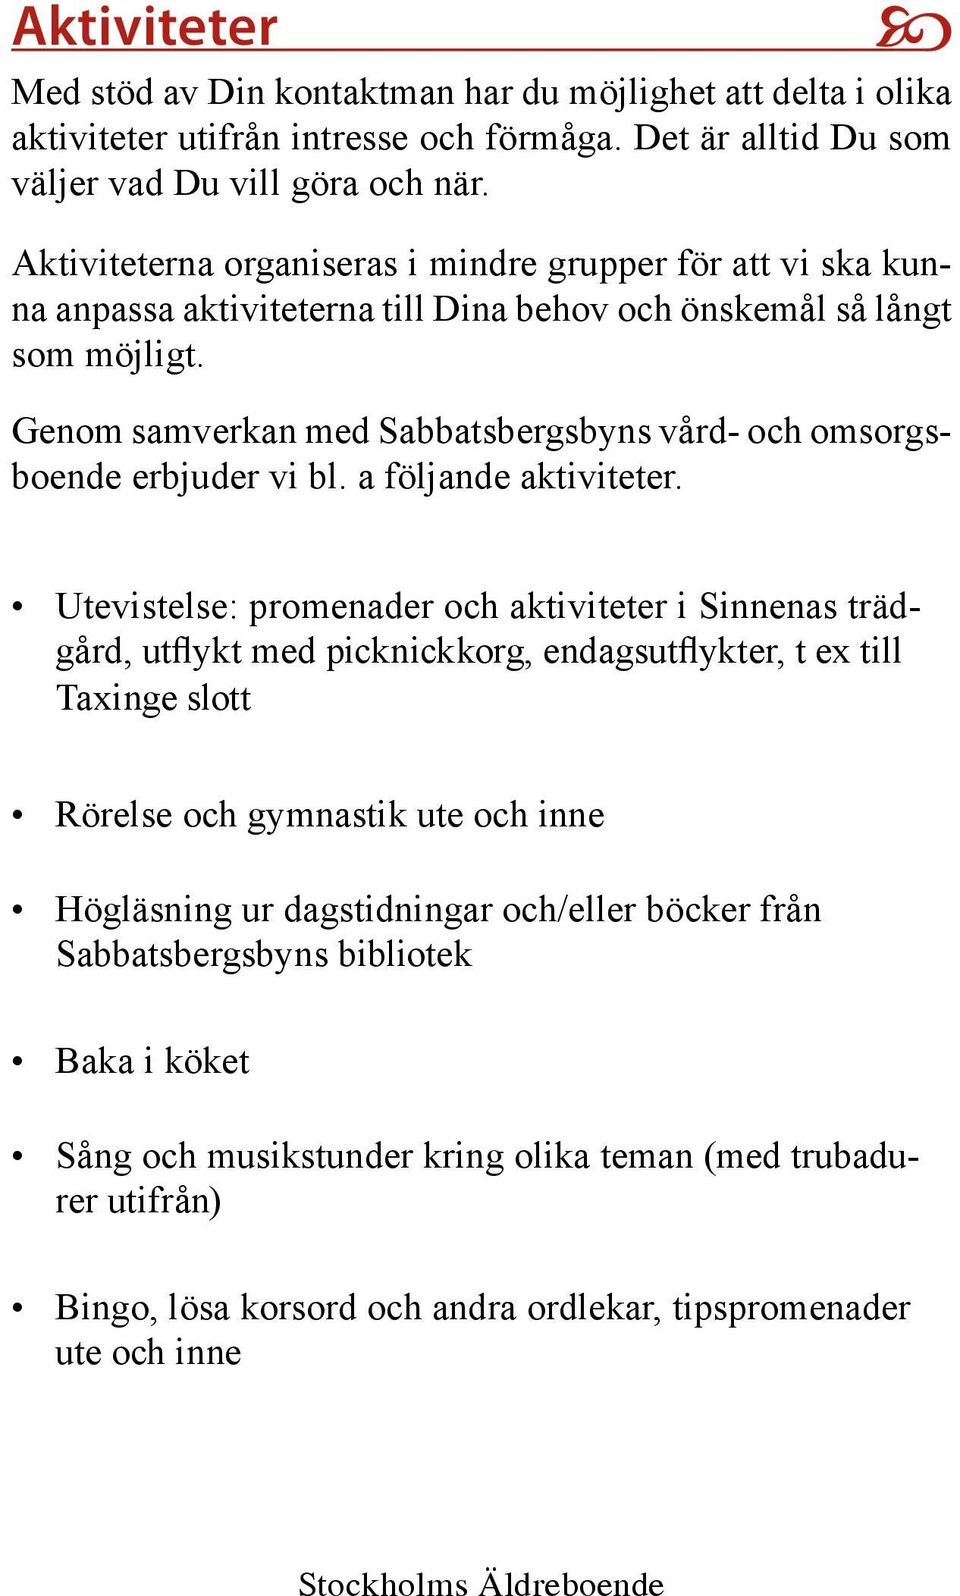 Genom samverkan med Sabbatsbergsbyns vård- och omsorgsboende erbjuder vi bl. a följande aktiviteter.